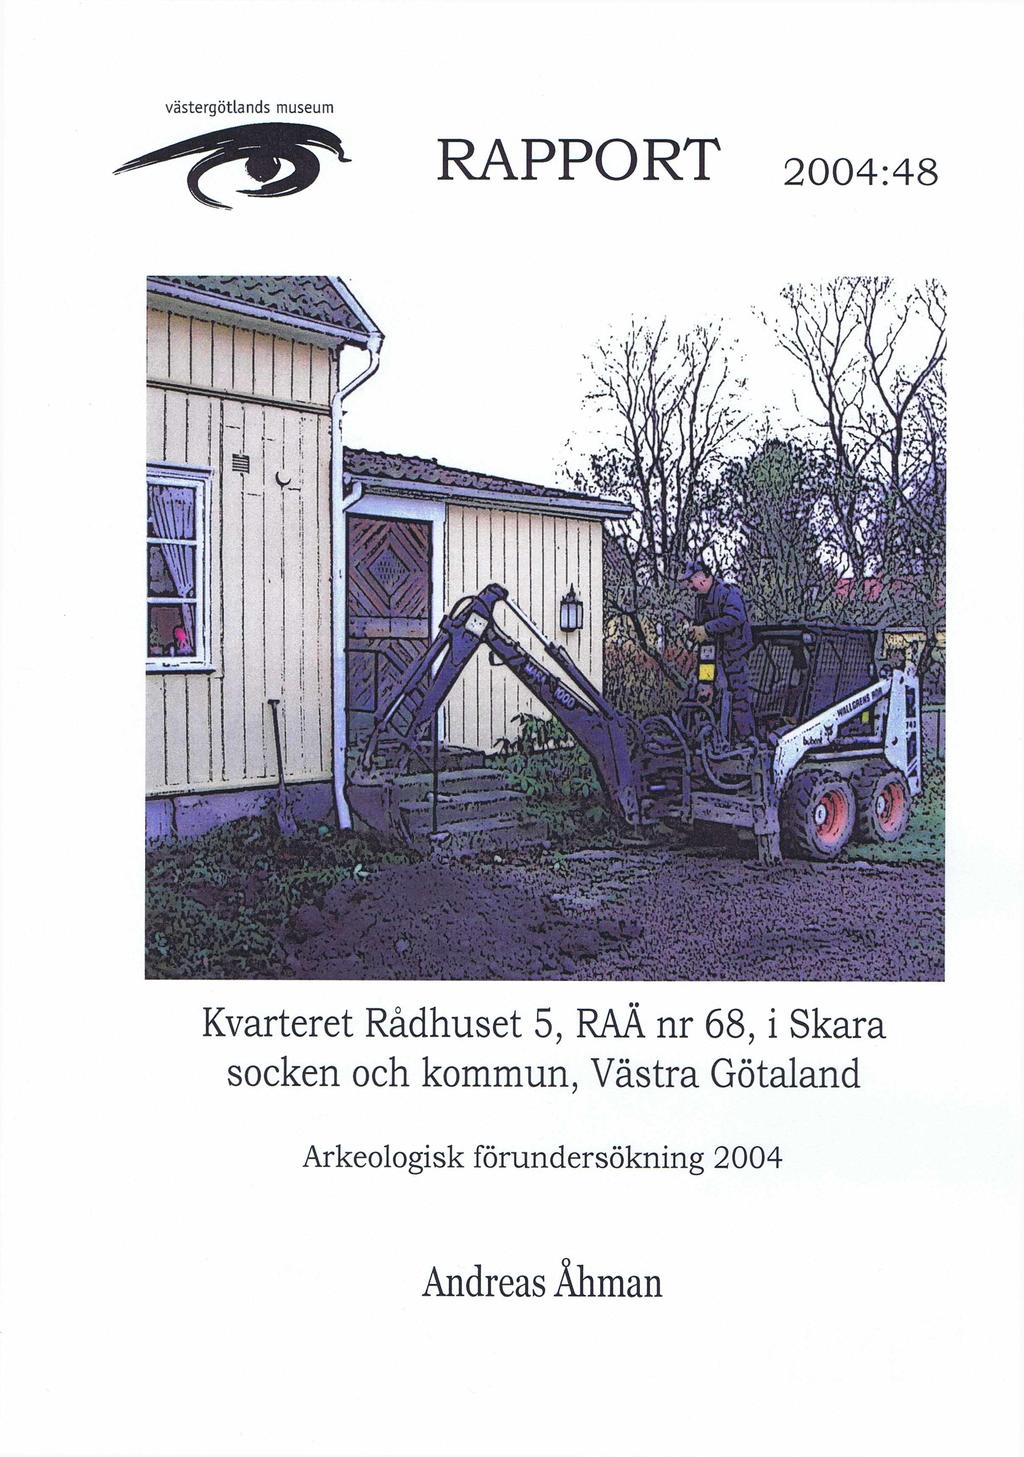 Västergötlands museum L RAPPORT 2004:48 Kvarteret Rådhuset 5, RAÄ nr 68,